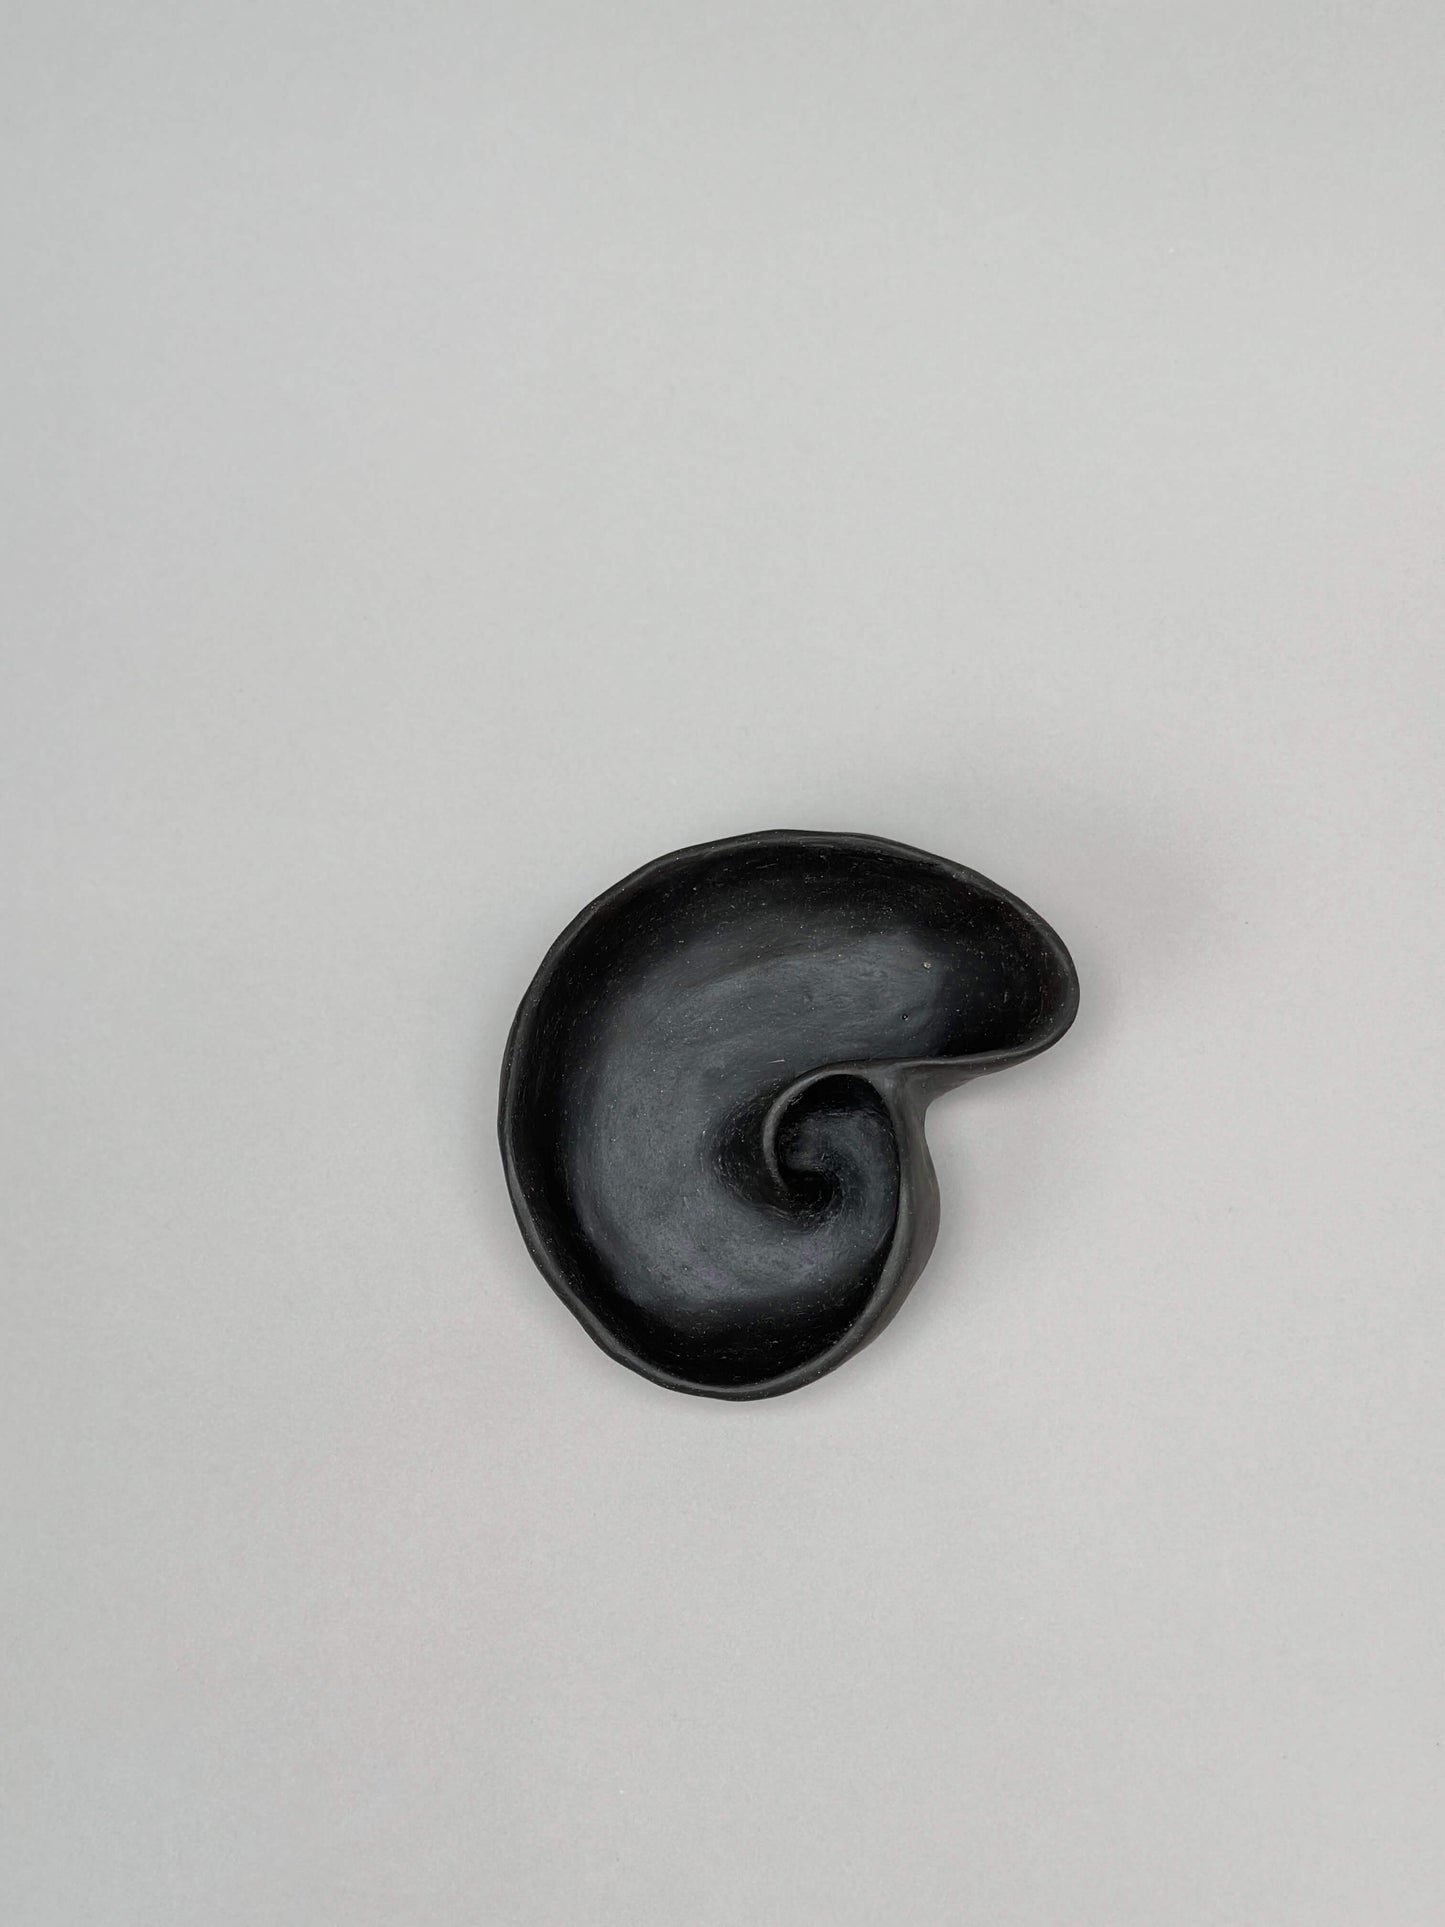  Pieza en forma de concha negra